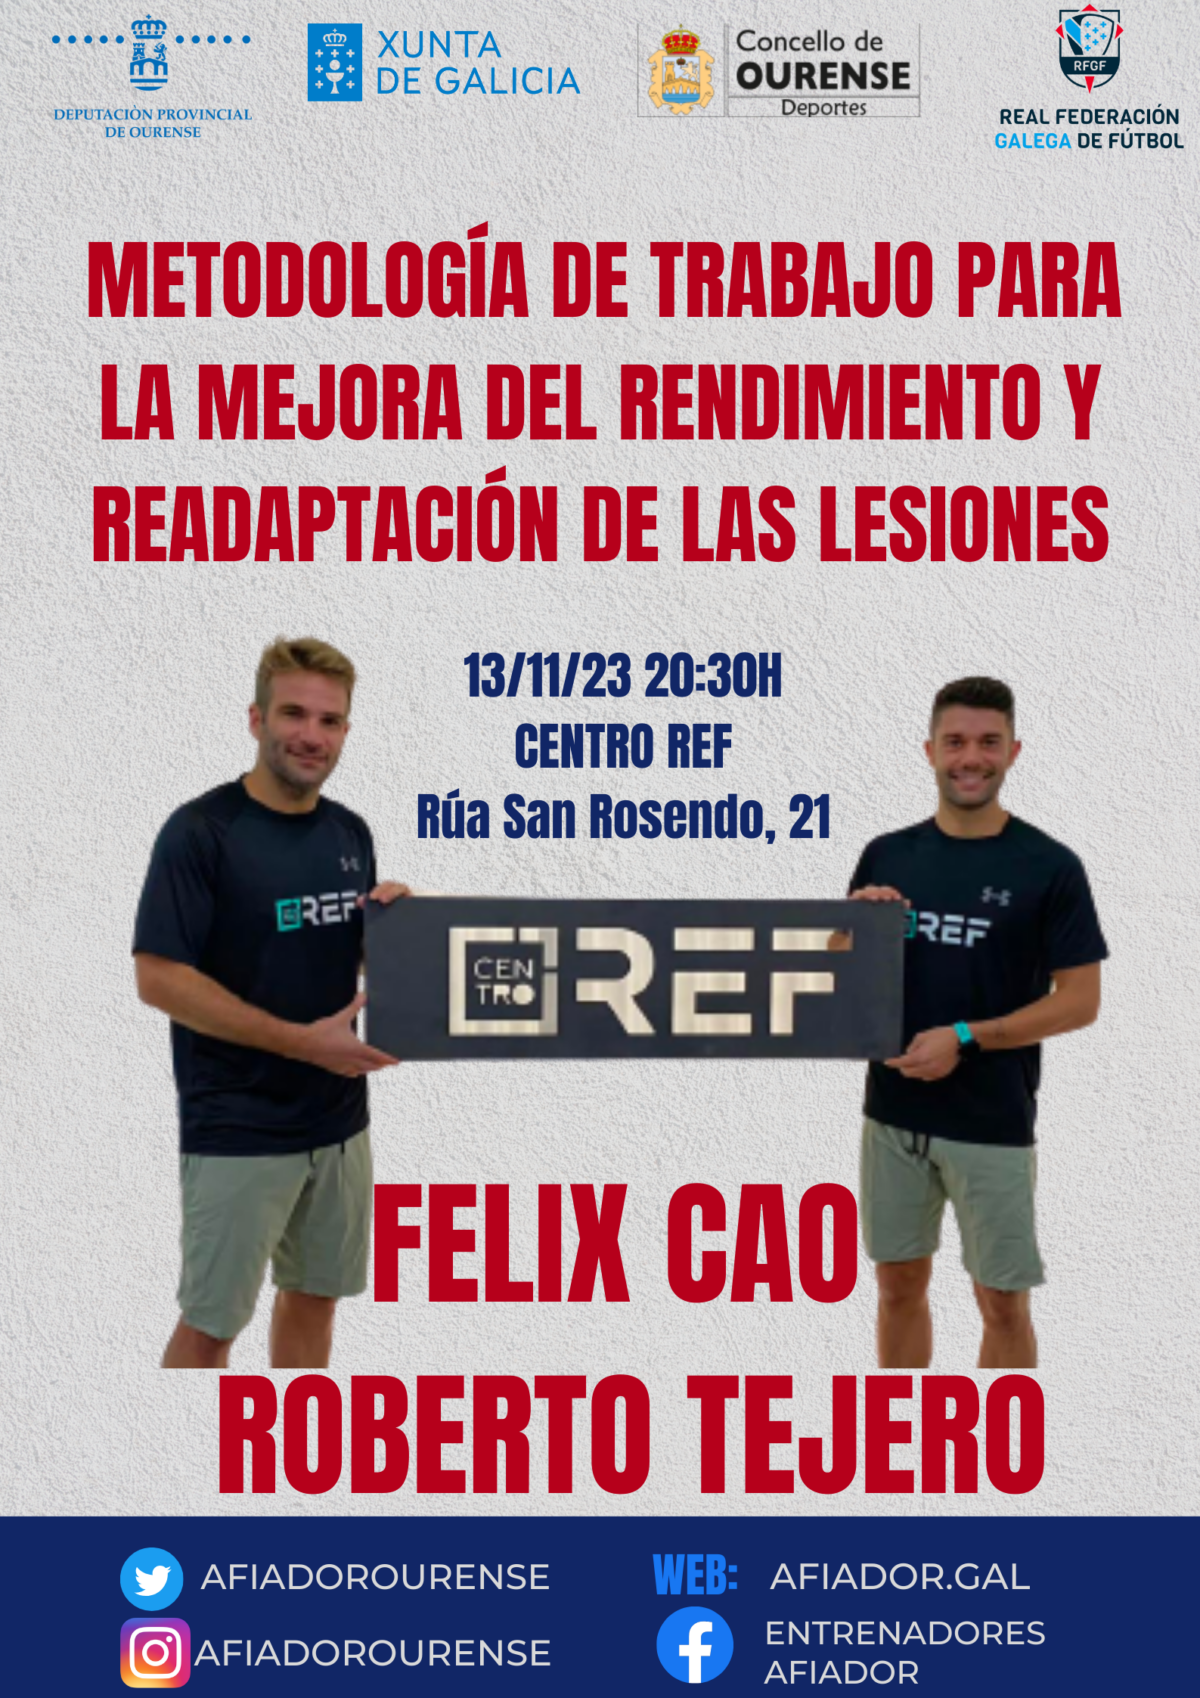 🏋🏽‍♂️ Felix Cao y Roberto Tejero compartirán sus exitosos métodos para recuperar lesiones y mejorar el rendimiento de los futbolistas